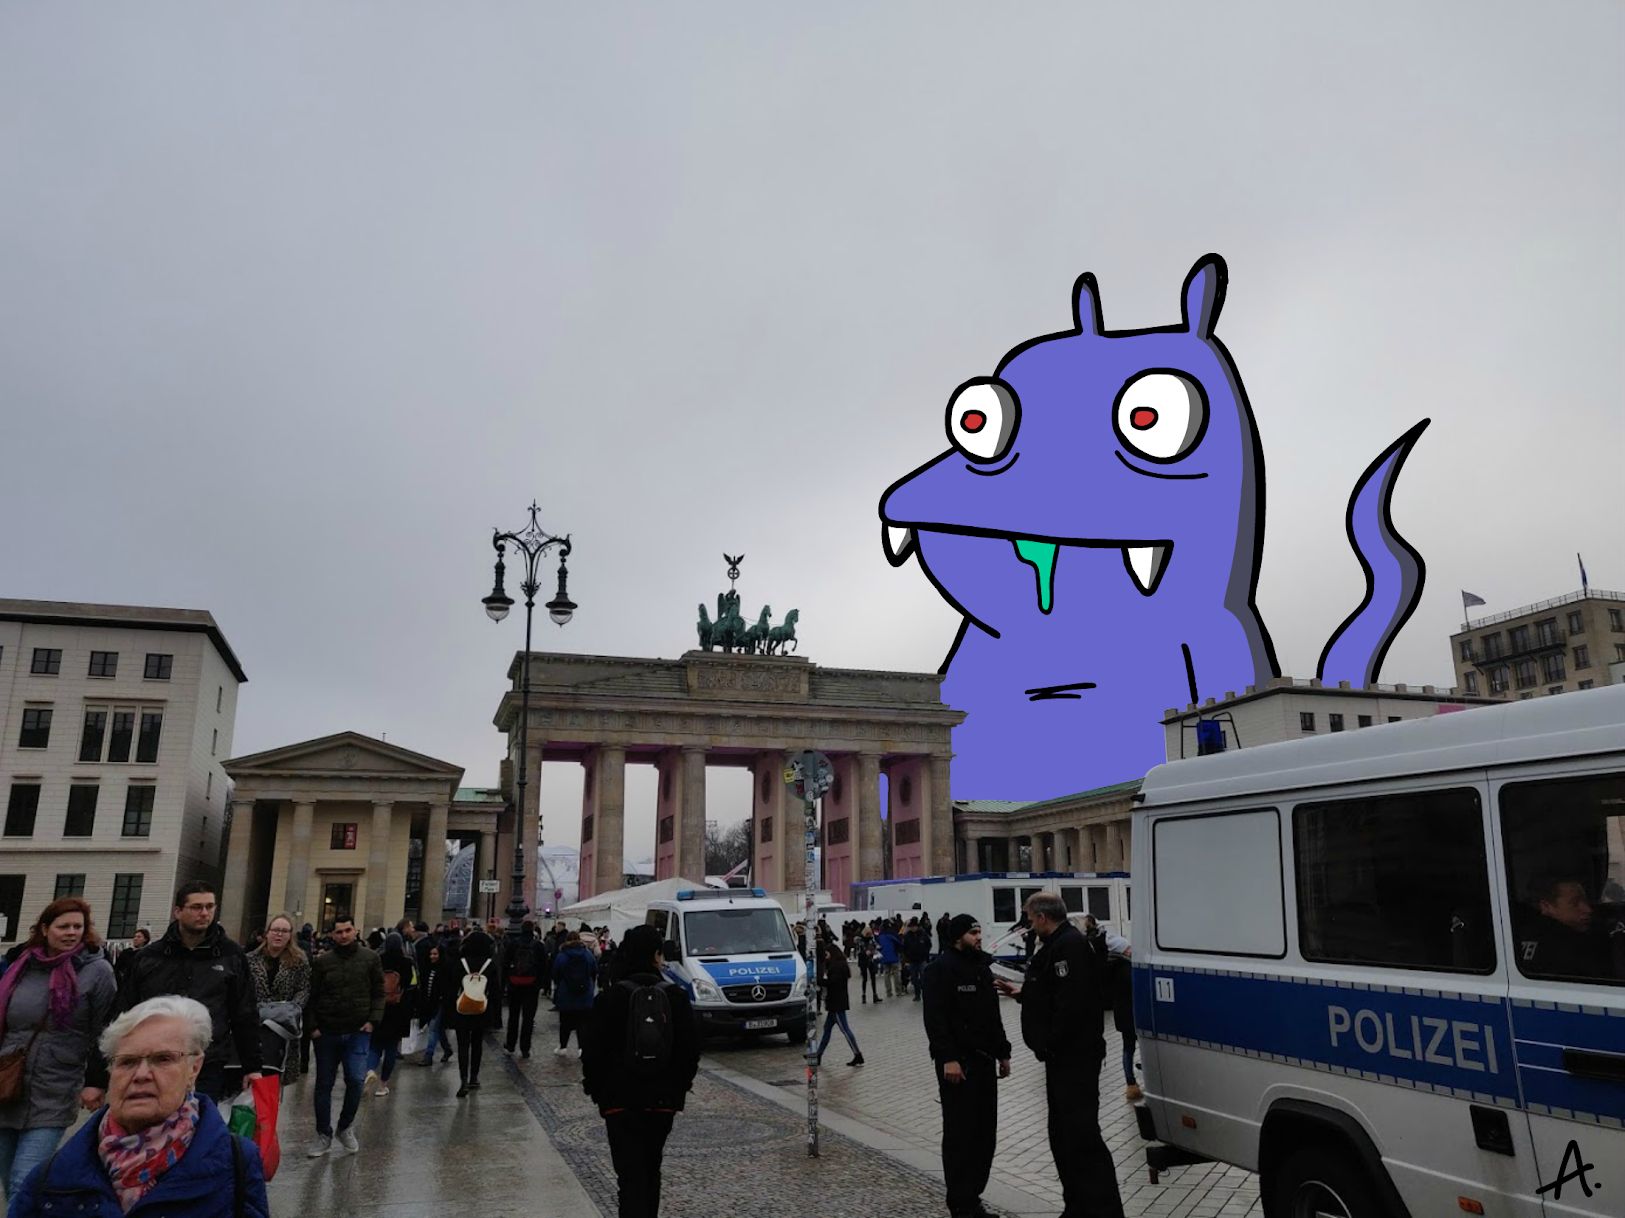 Berling Brandenburg Door being attacked by purple innocent monster